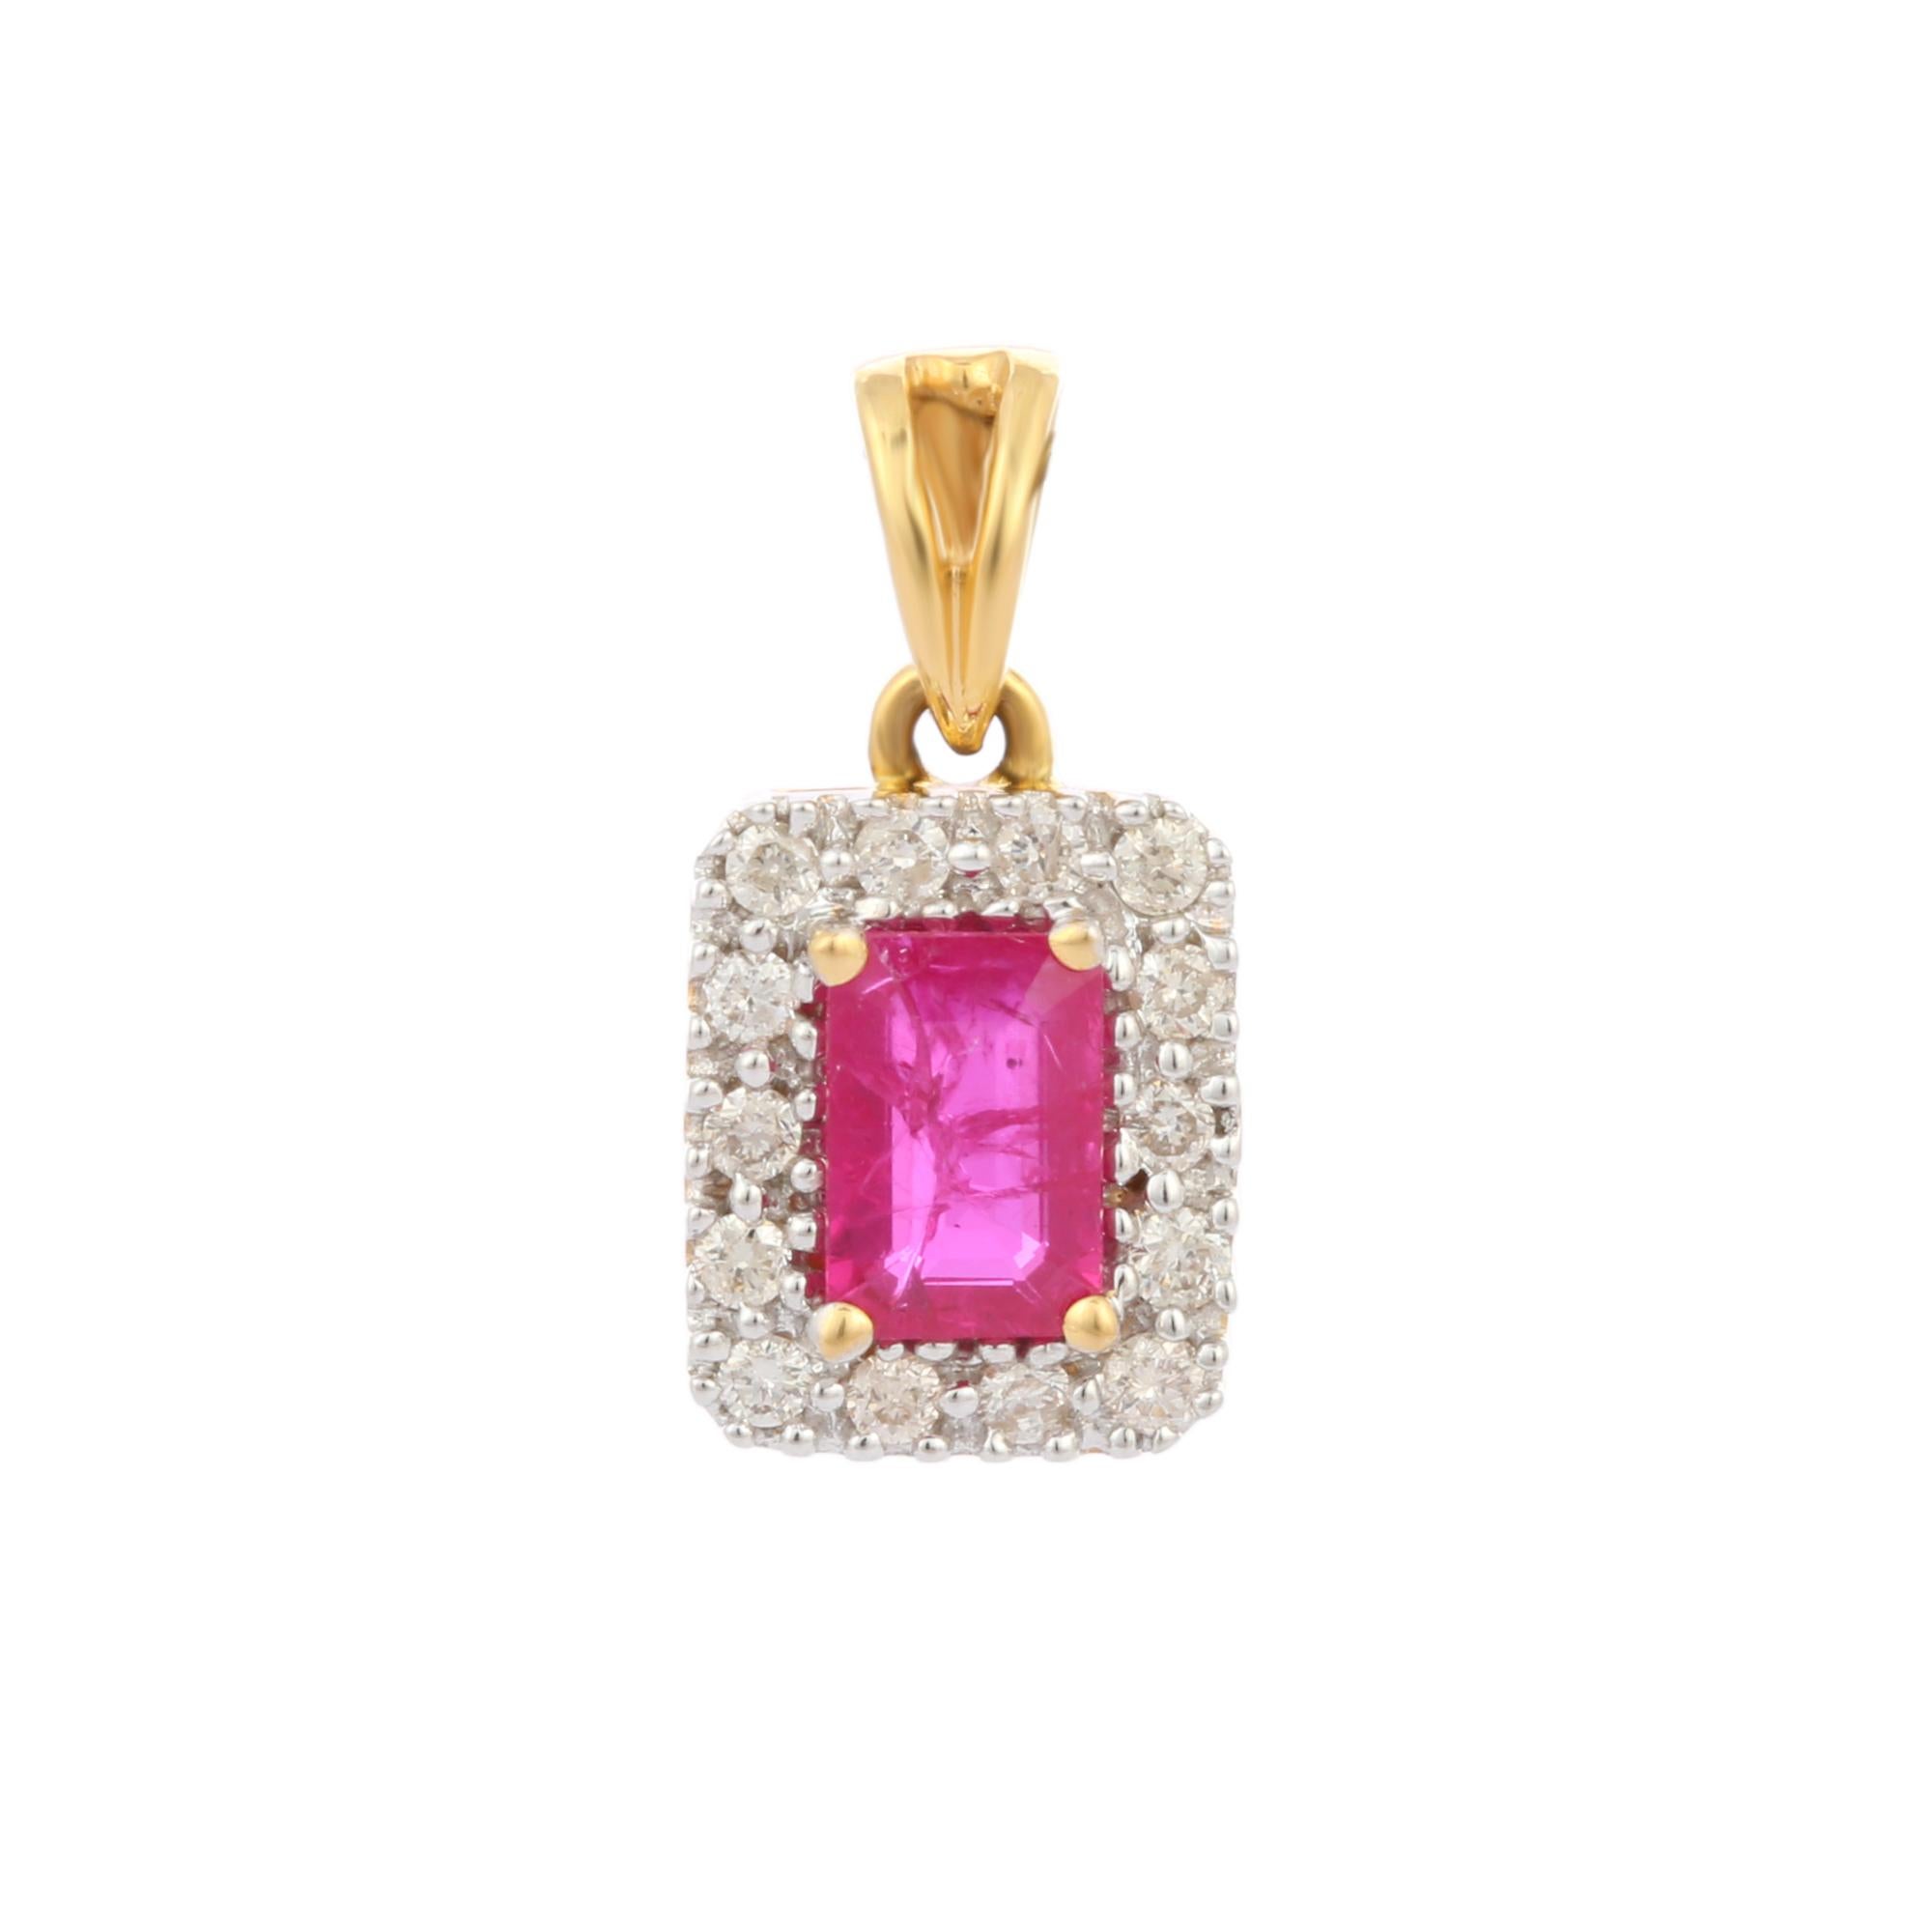  Pendentif Halo Diamond Ruby en or 18 carats. Elle est ornée d'un rubis taillé en octogone et de diamants qui apportent une touche décente à votre look. Les pendentifs sont portés ou offerts pour représenter l'amour et les promesses. C'est un bijou